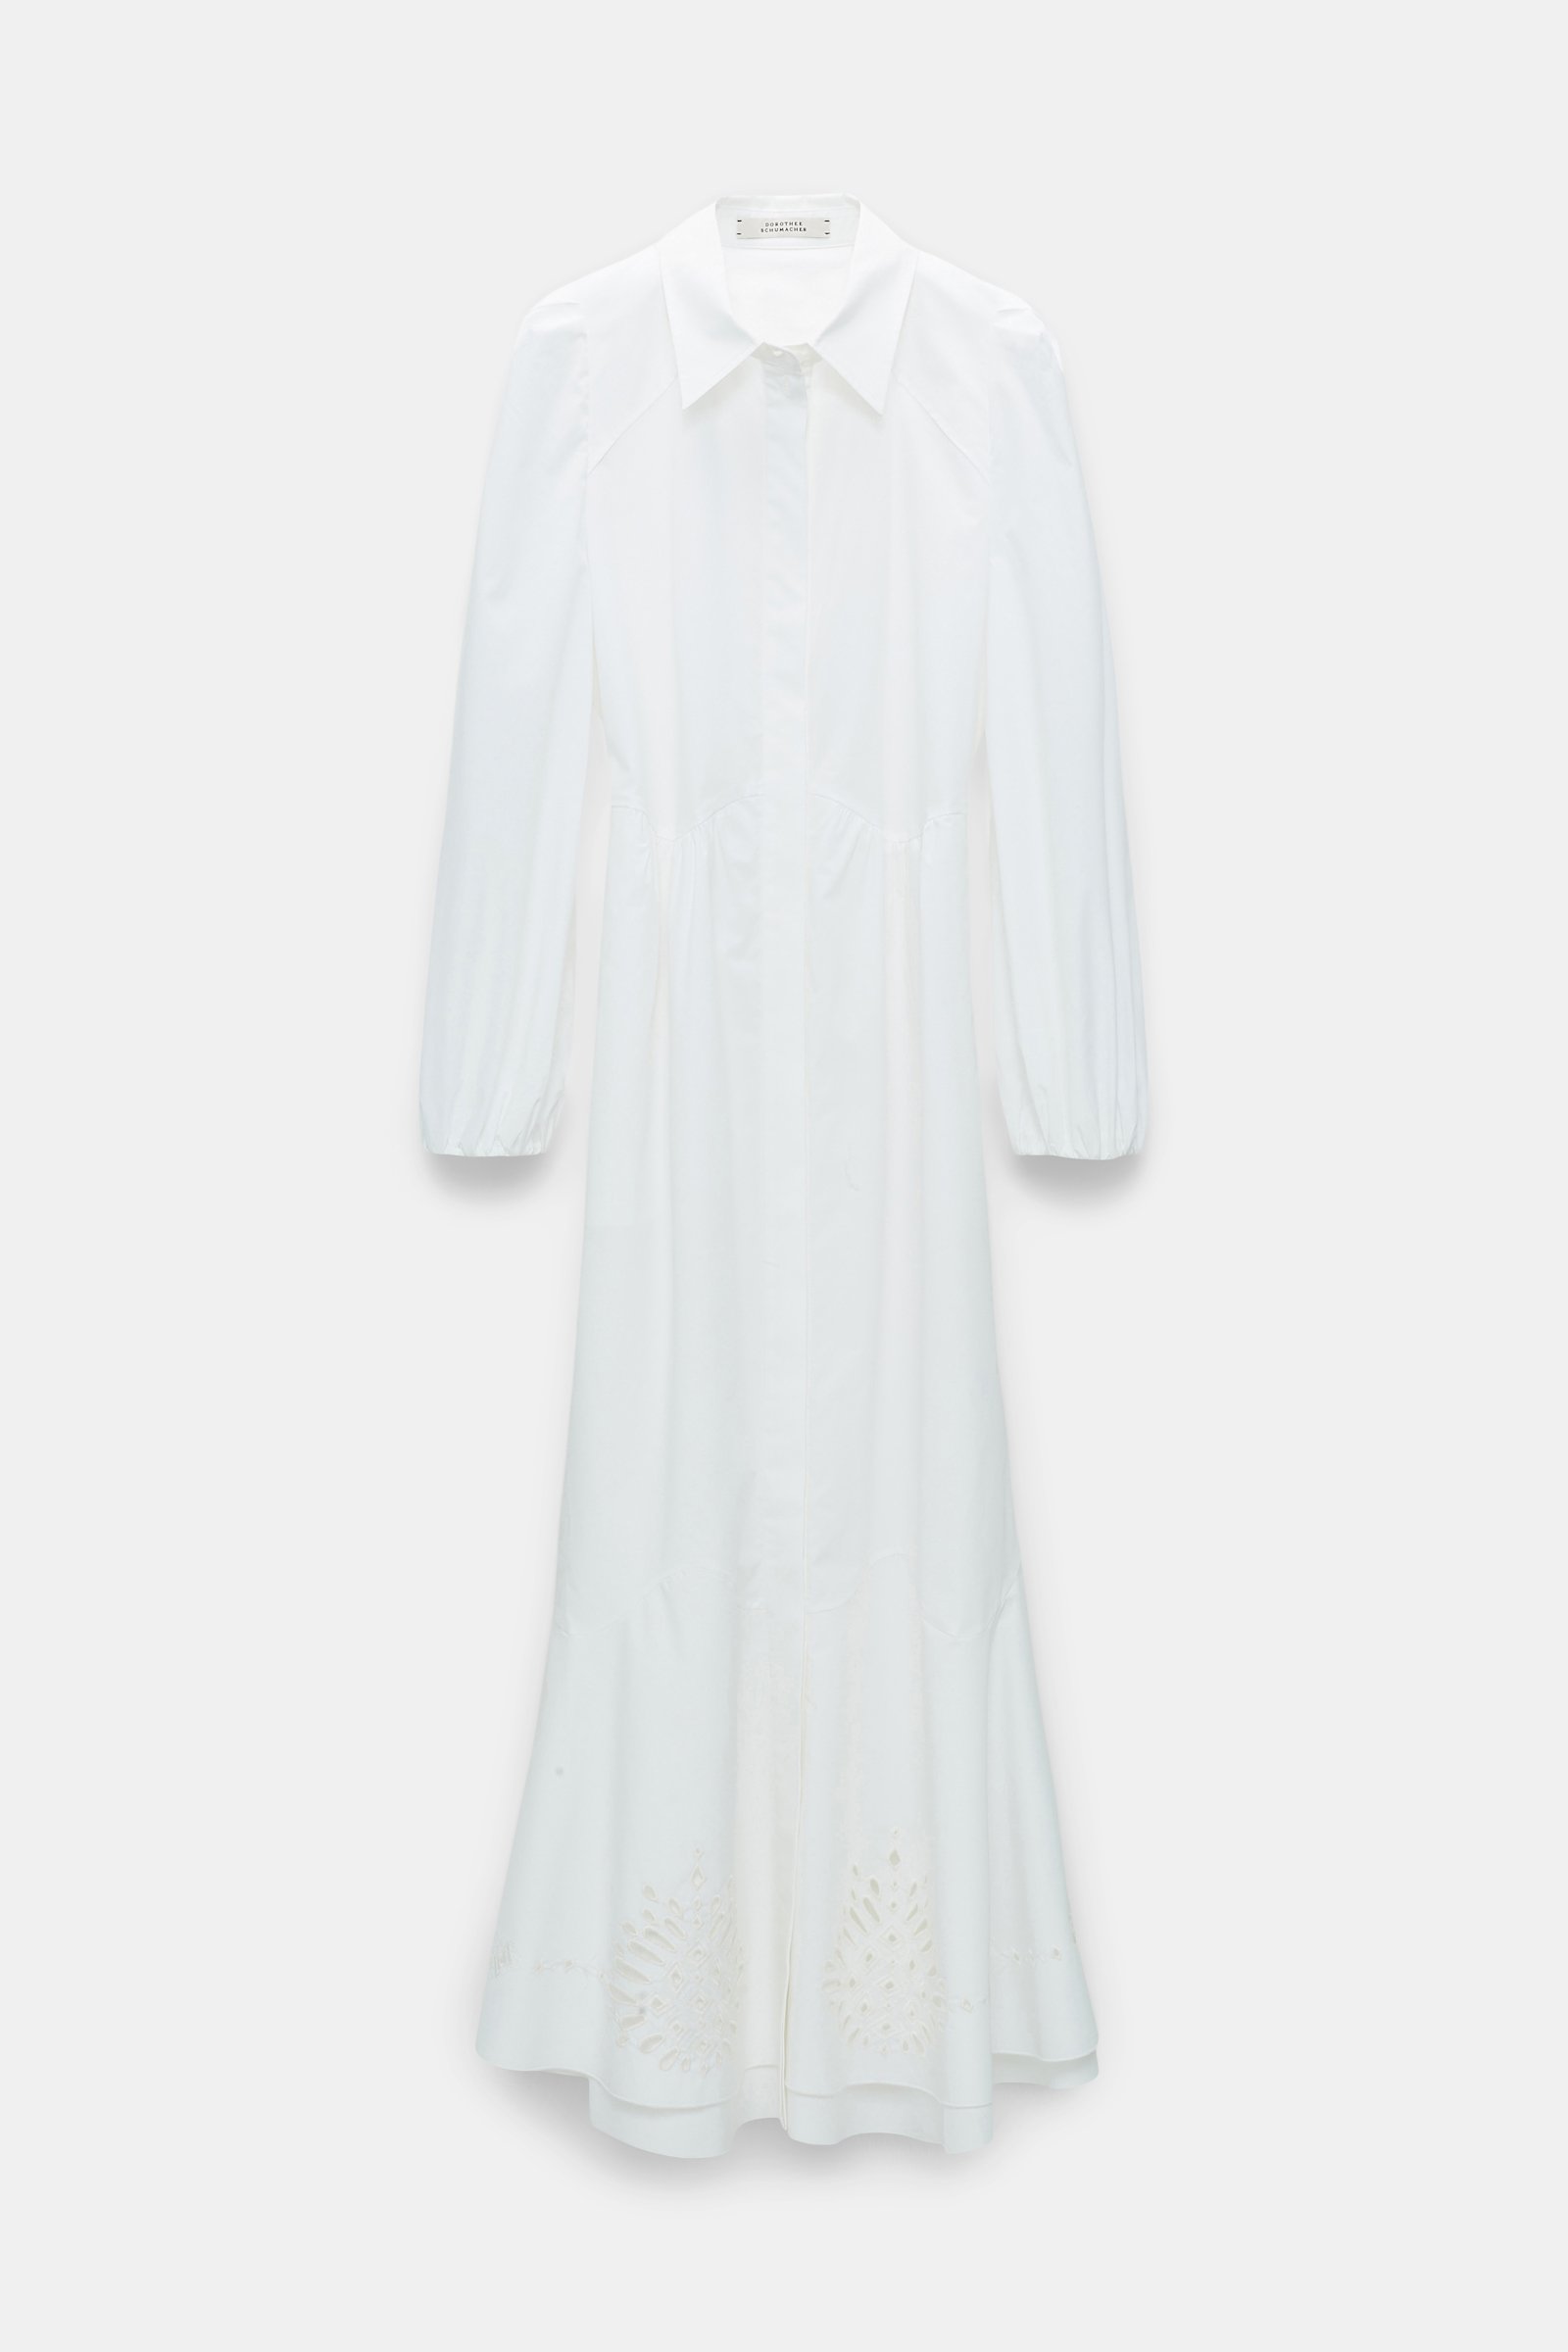 Dorothee Schumacher Cotton poplin shirtdress pure white